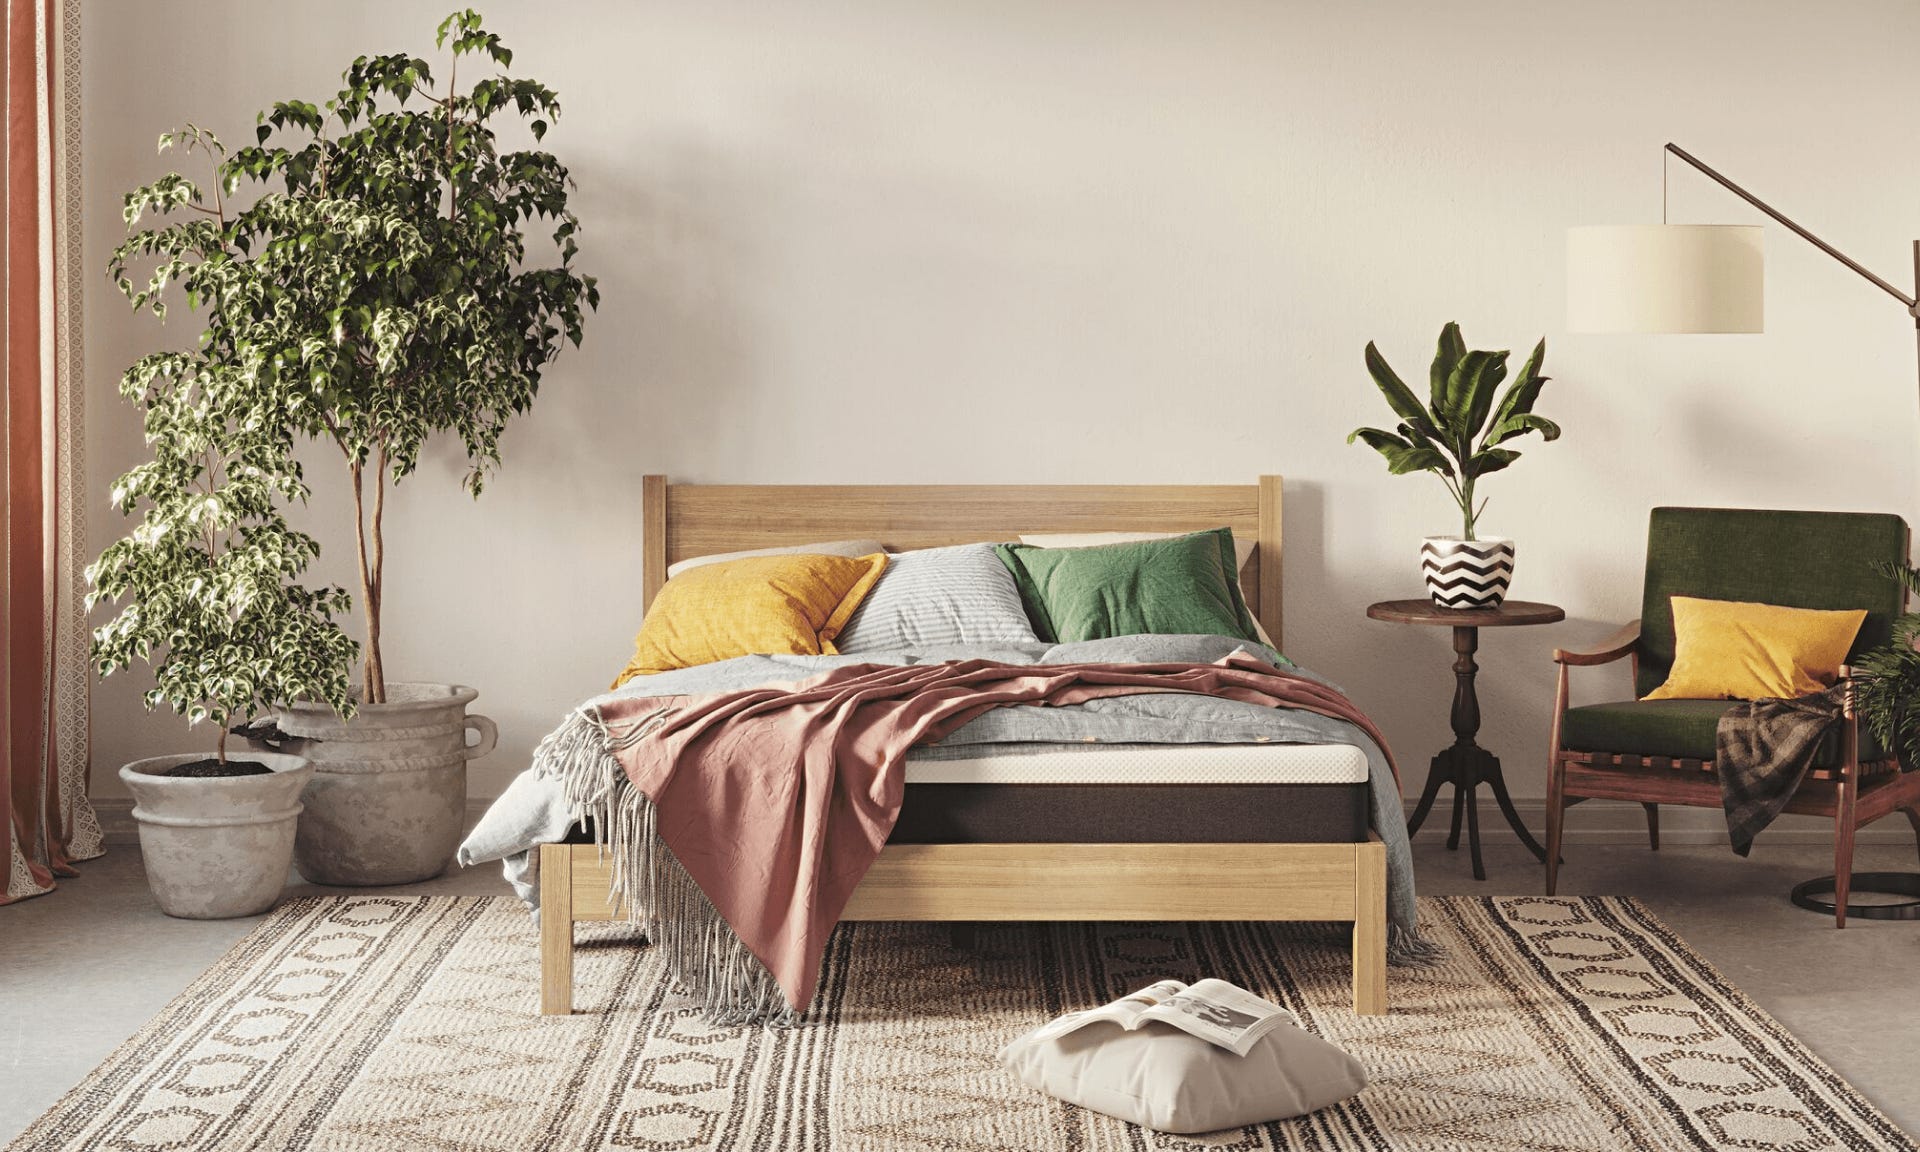 Emma Wooden Bed - Elegance ​rooted in solid craftsmanship.